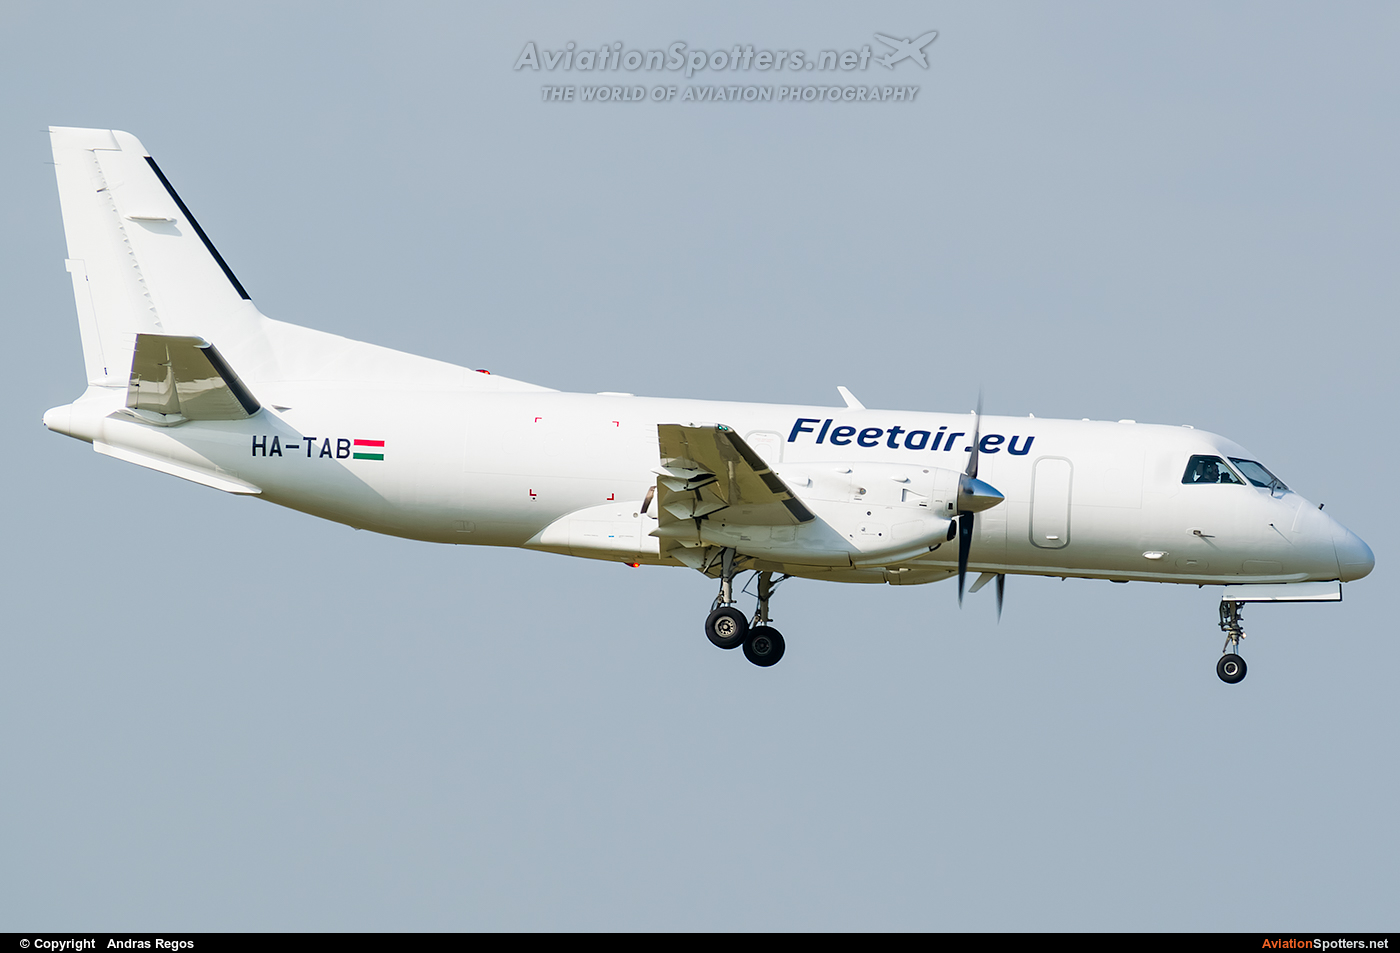 Fleet Air International  -  340  (HA-TAB) By Andras Regos (regos)